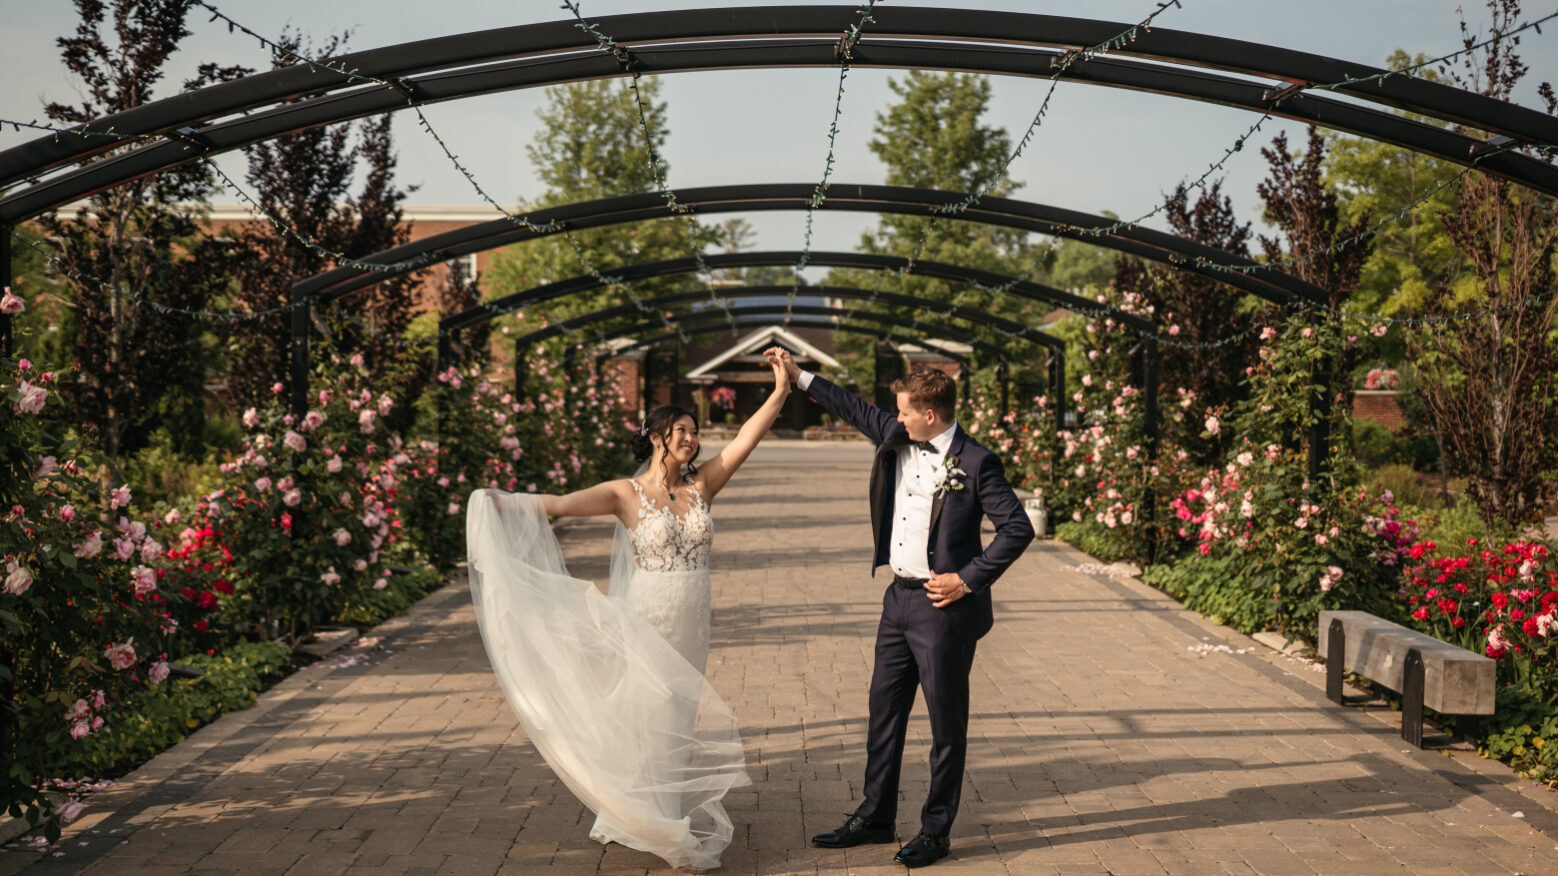 Fairytale Outdoor Wedding Venues